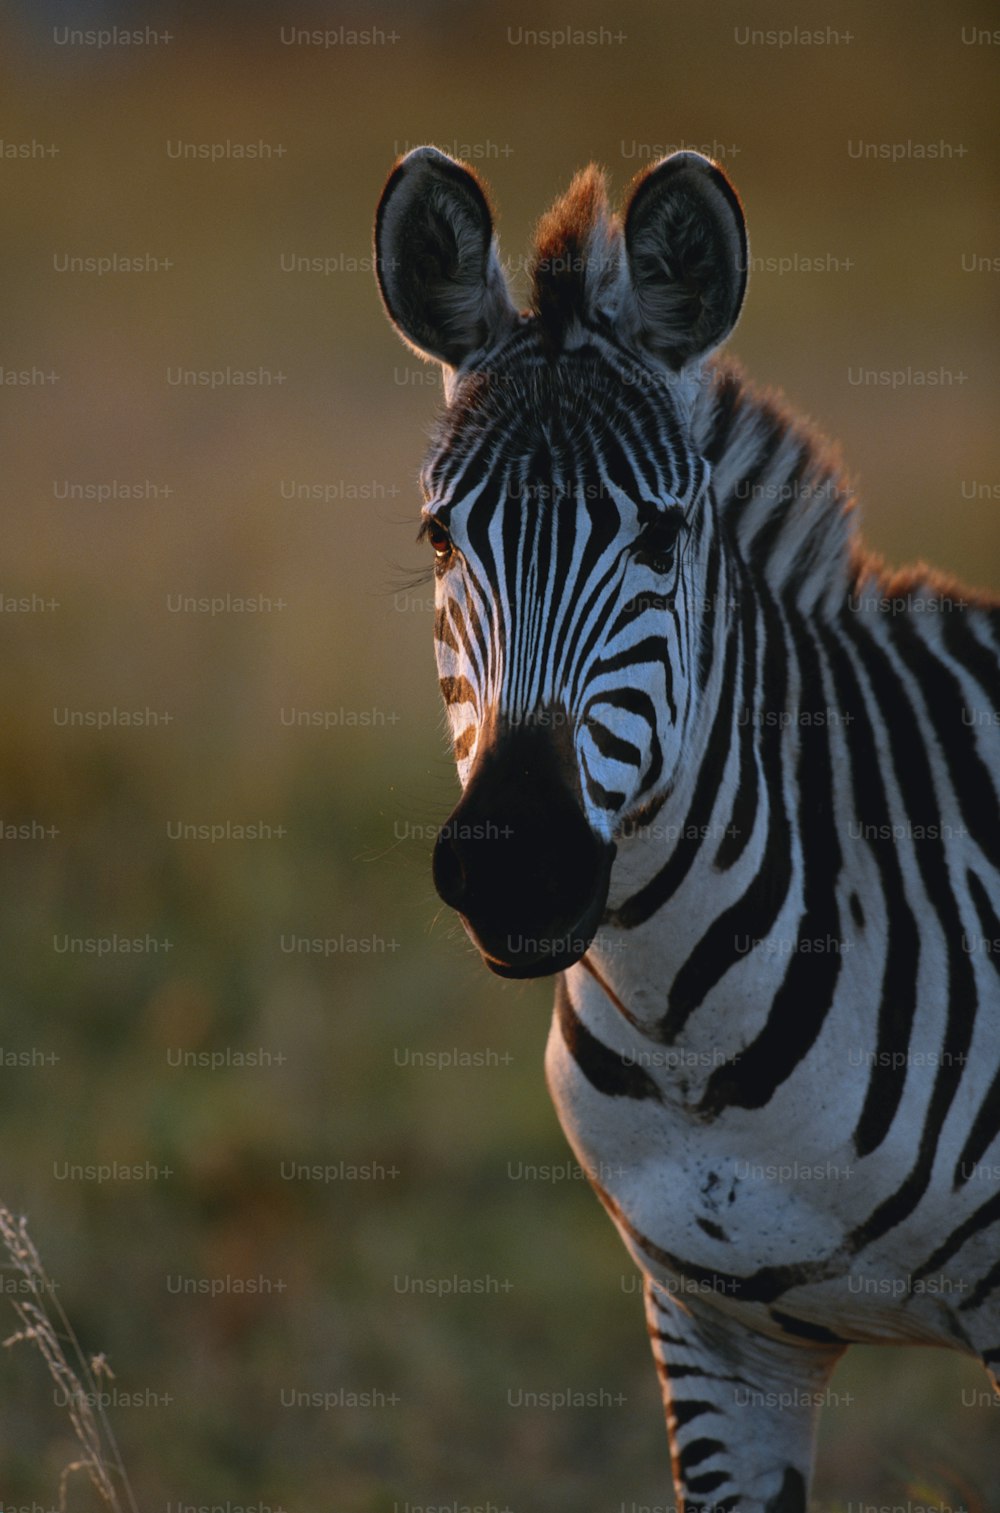 a close up of a zebra in a field